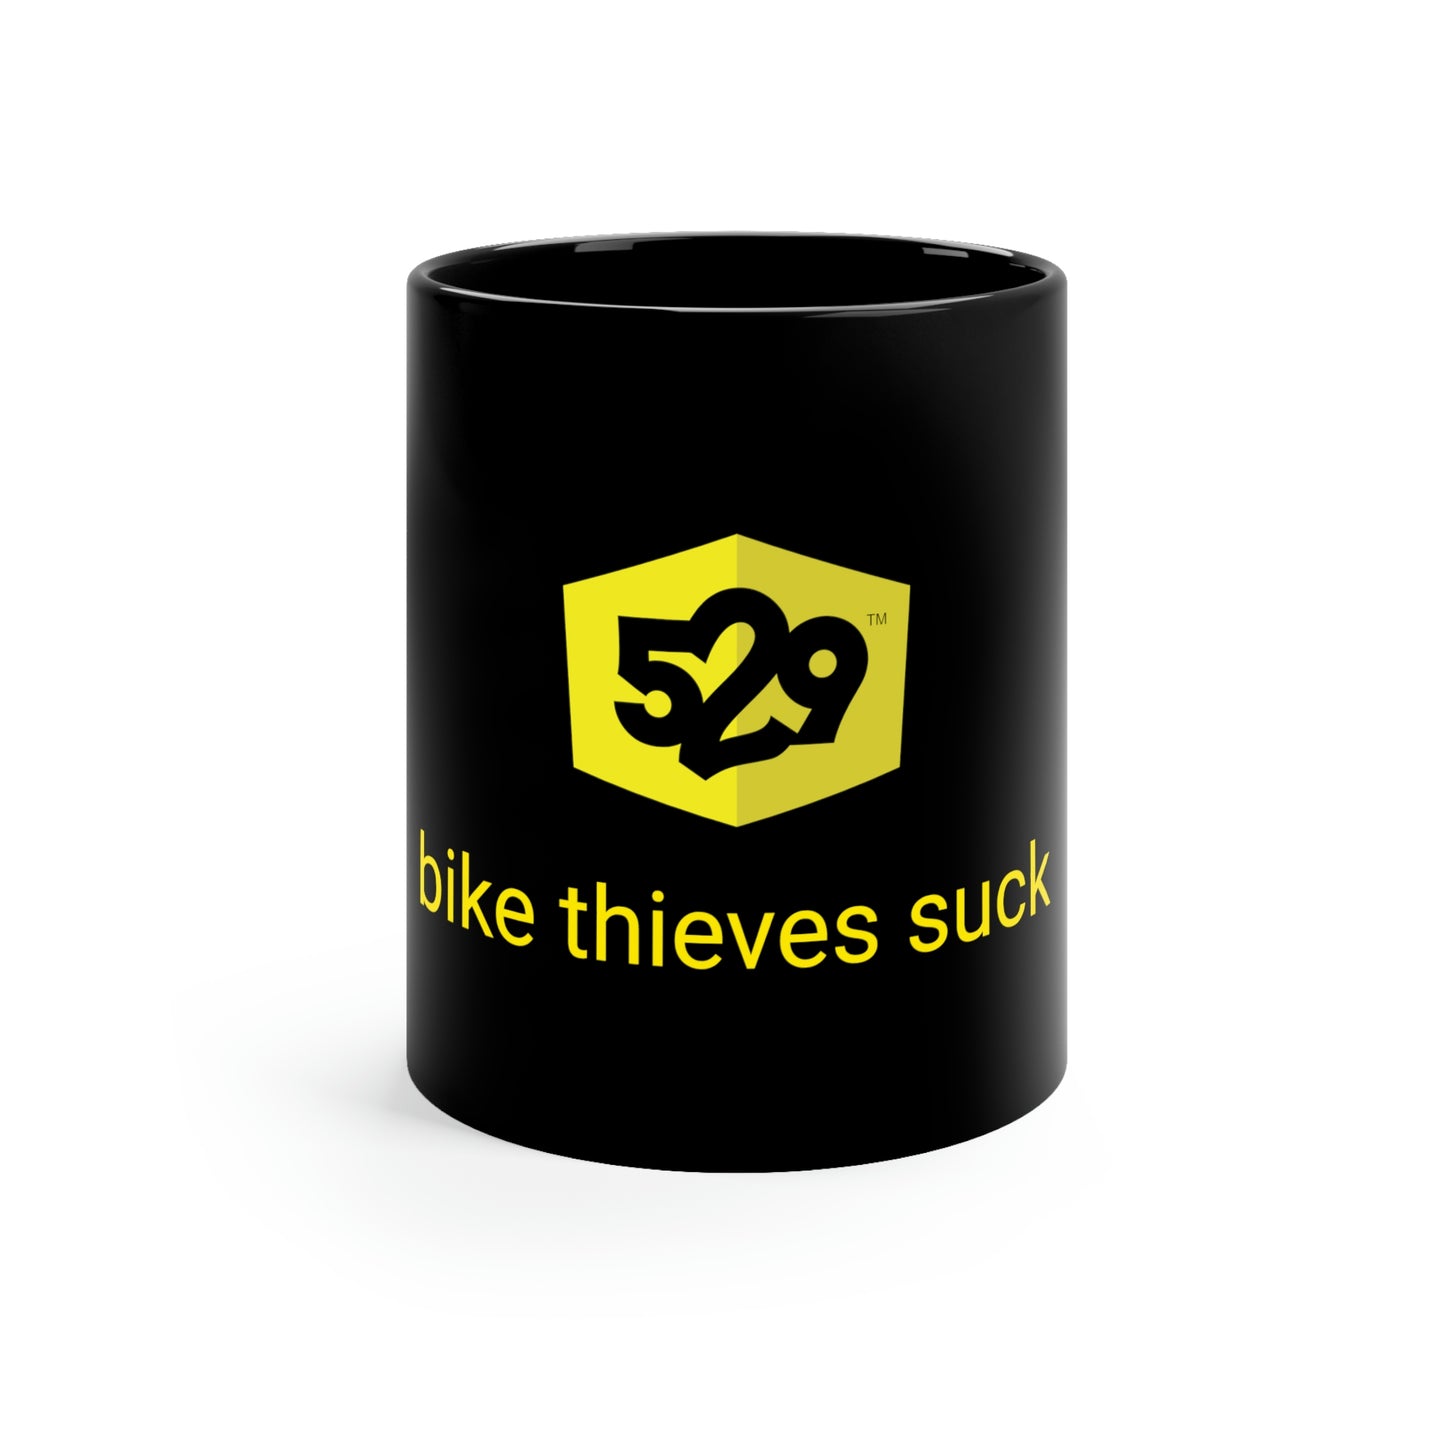 "Bike thieves suck" taza